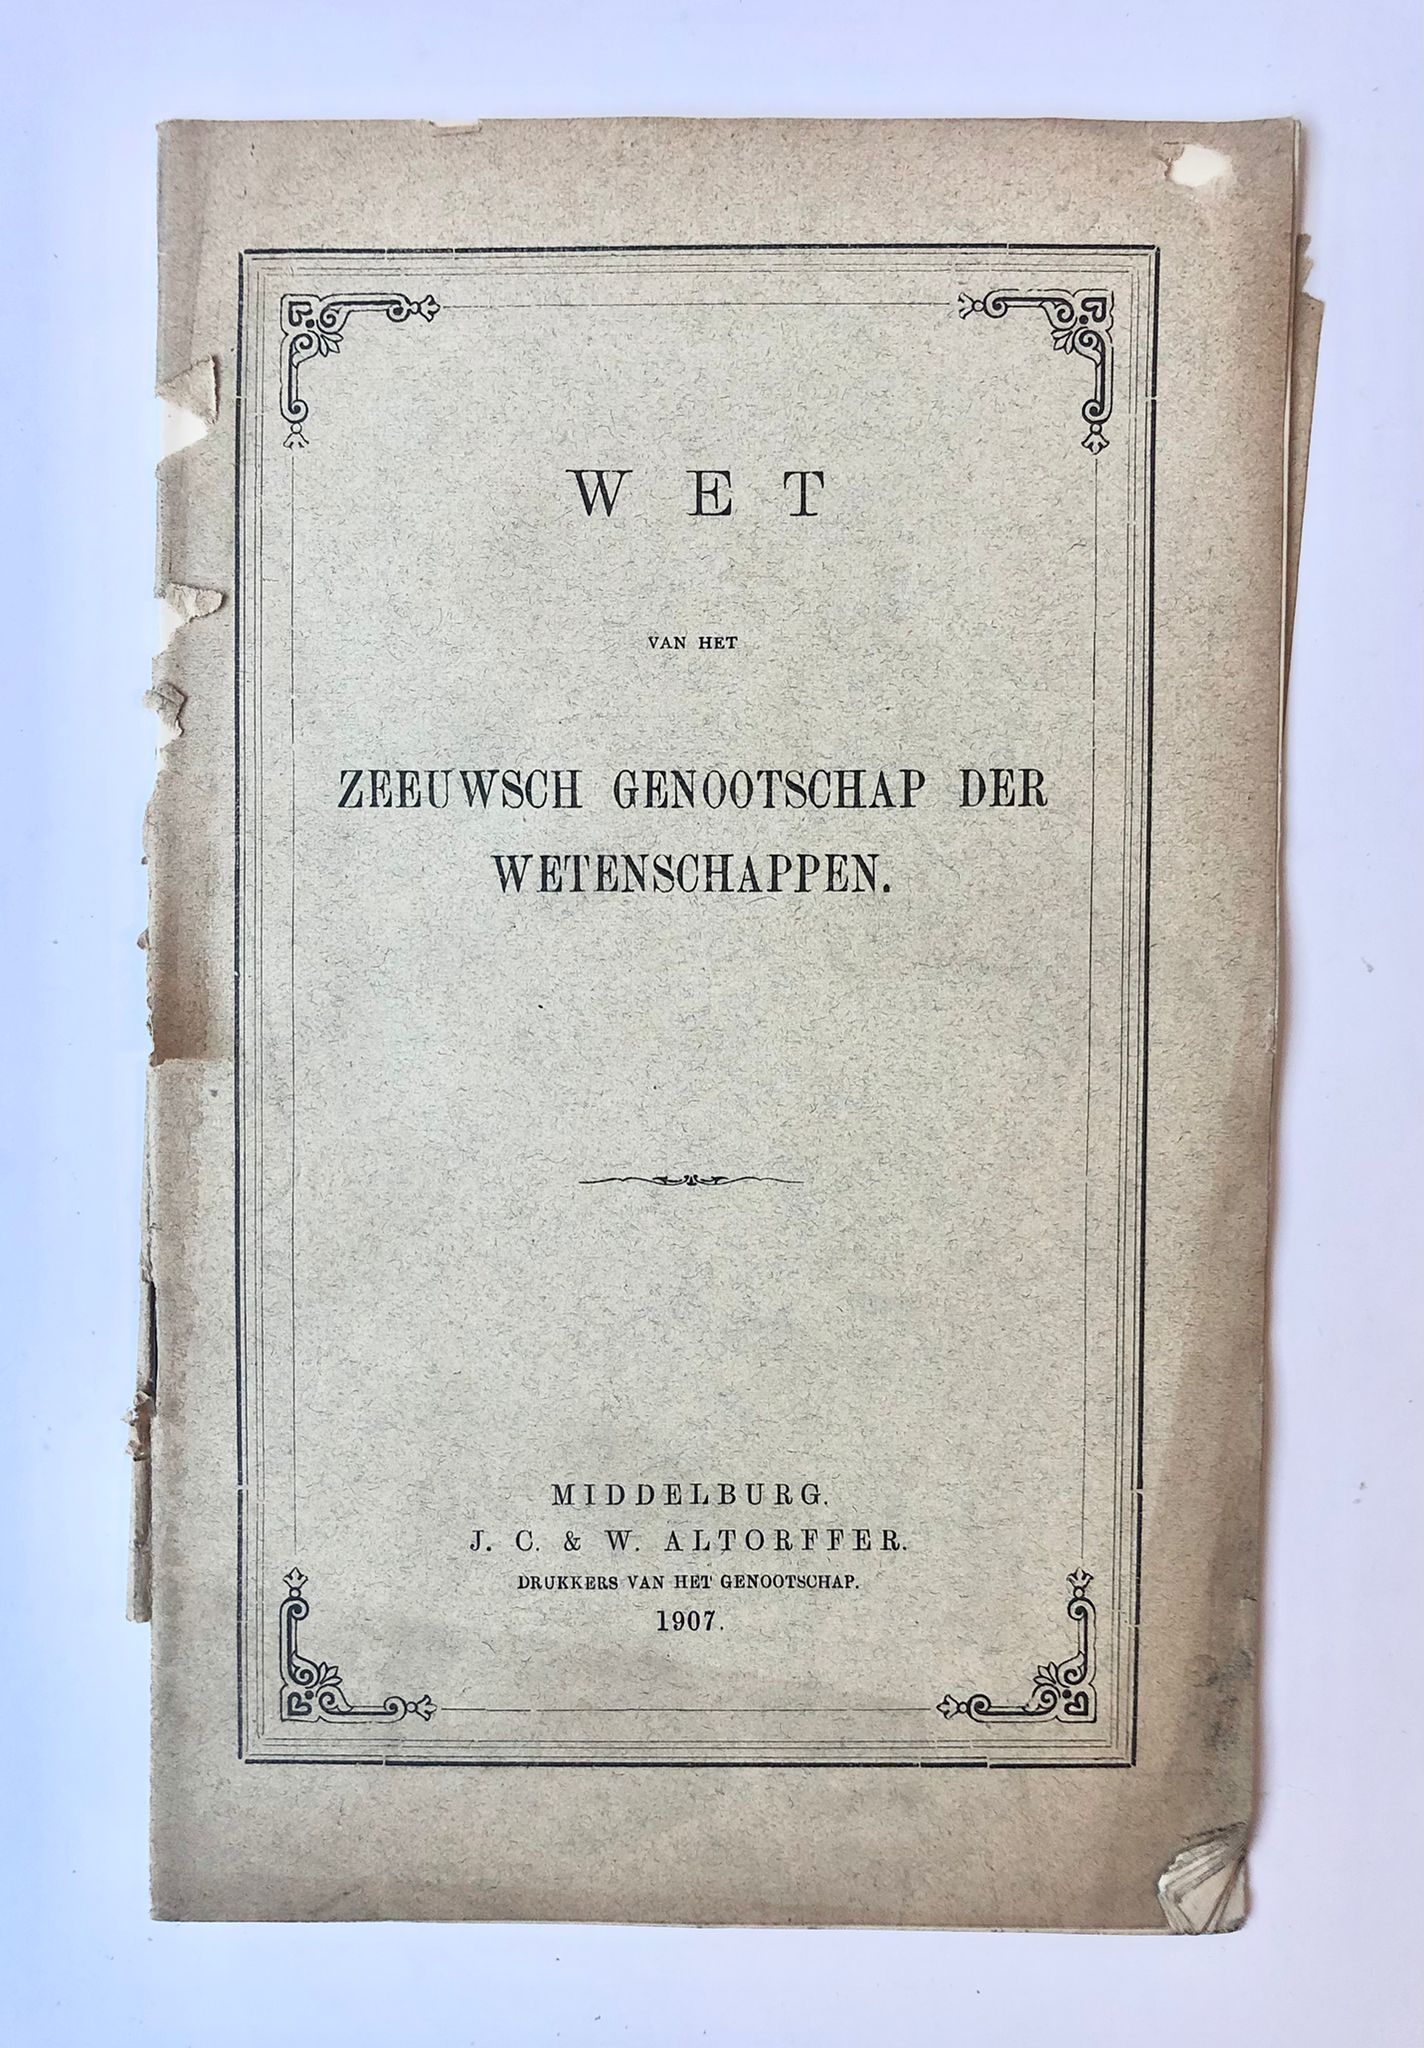 [Middelburg, Zeeland] Wet van het Zeeuwsch genootschap der wetenschappen, J. C. & W. Altorffer, Middelburg, 1907, 18 pp.